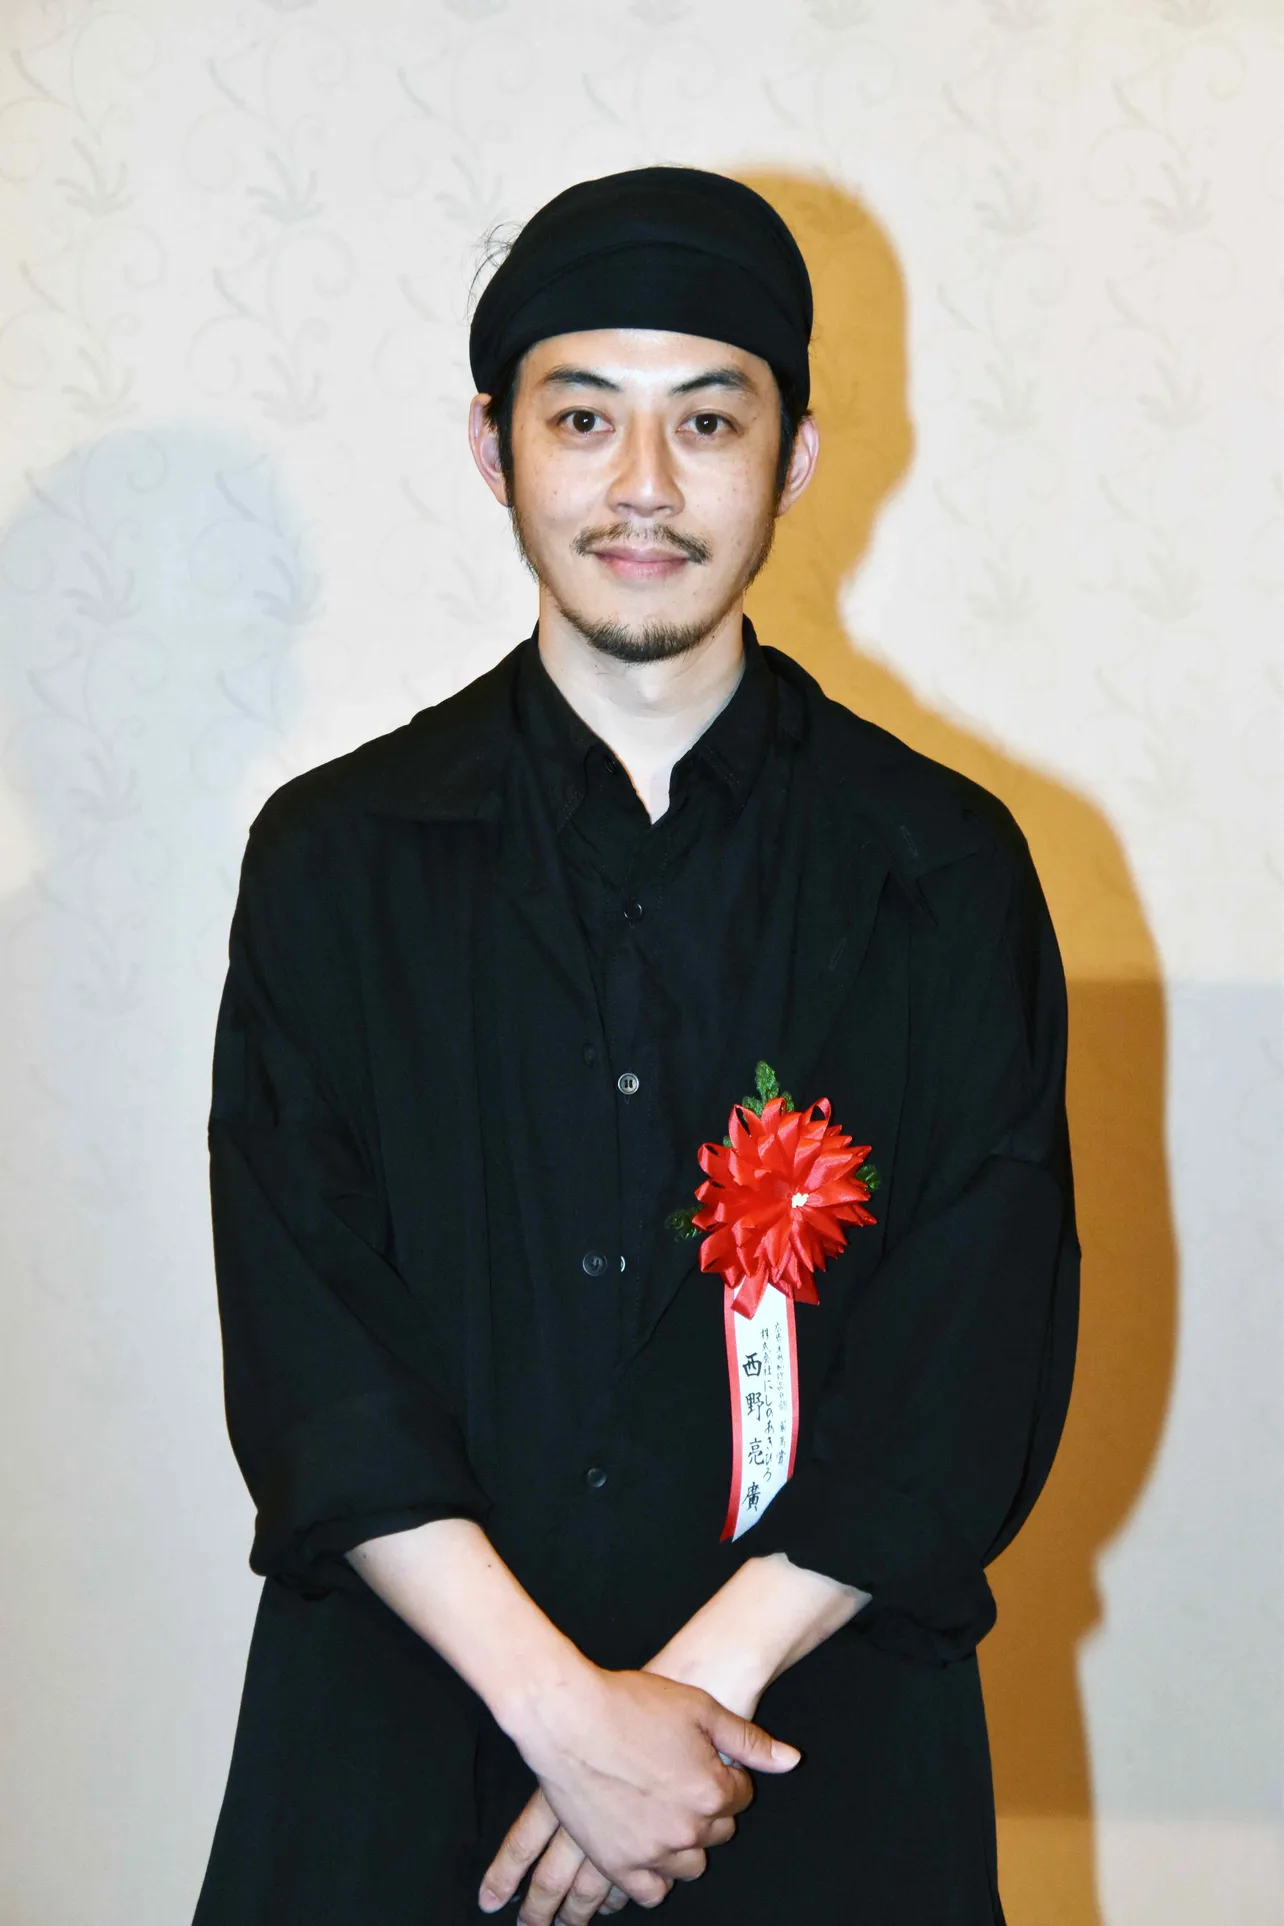 キングコング西野亮廣が「毎日広告デザイン賞」最高賞を受賞